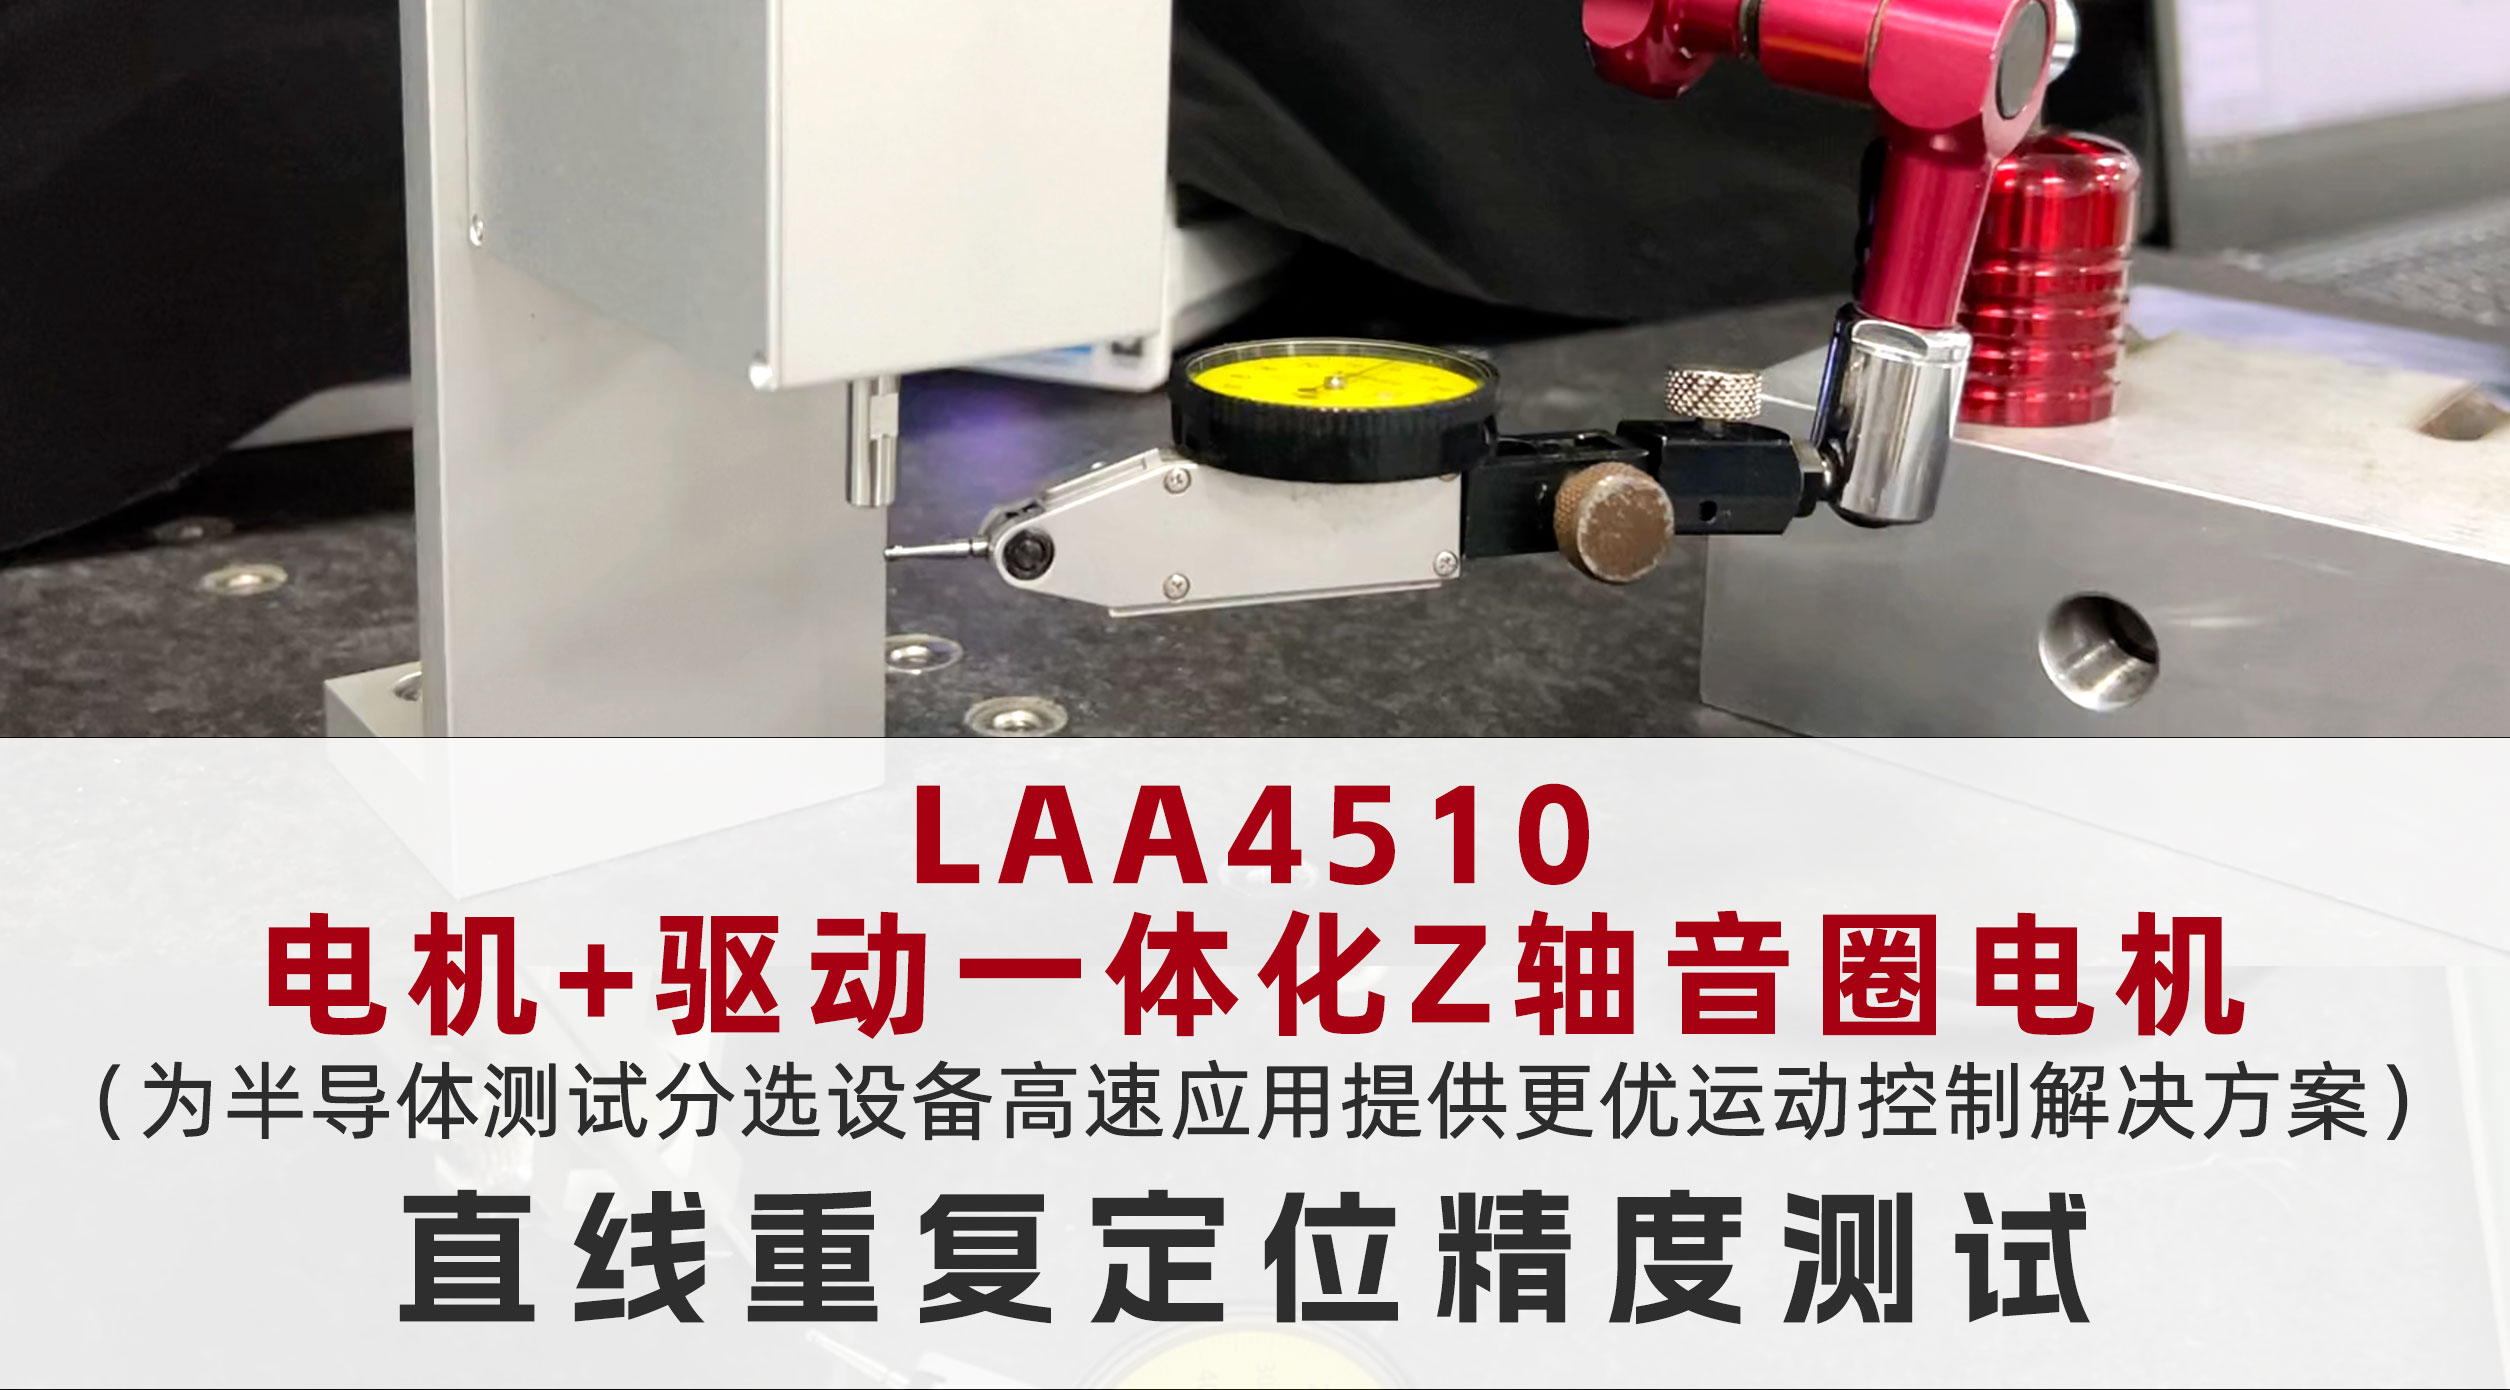 电机+驱动一体化Z轴音圈电机LAA4510直线重复定位测试 #半导体分选机核心部件 #高精度音圈电机
 